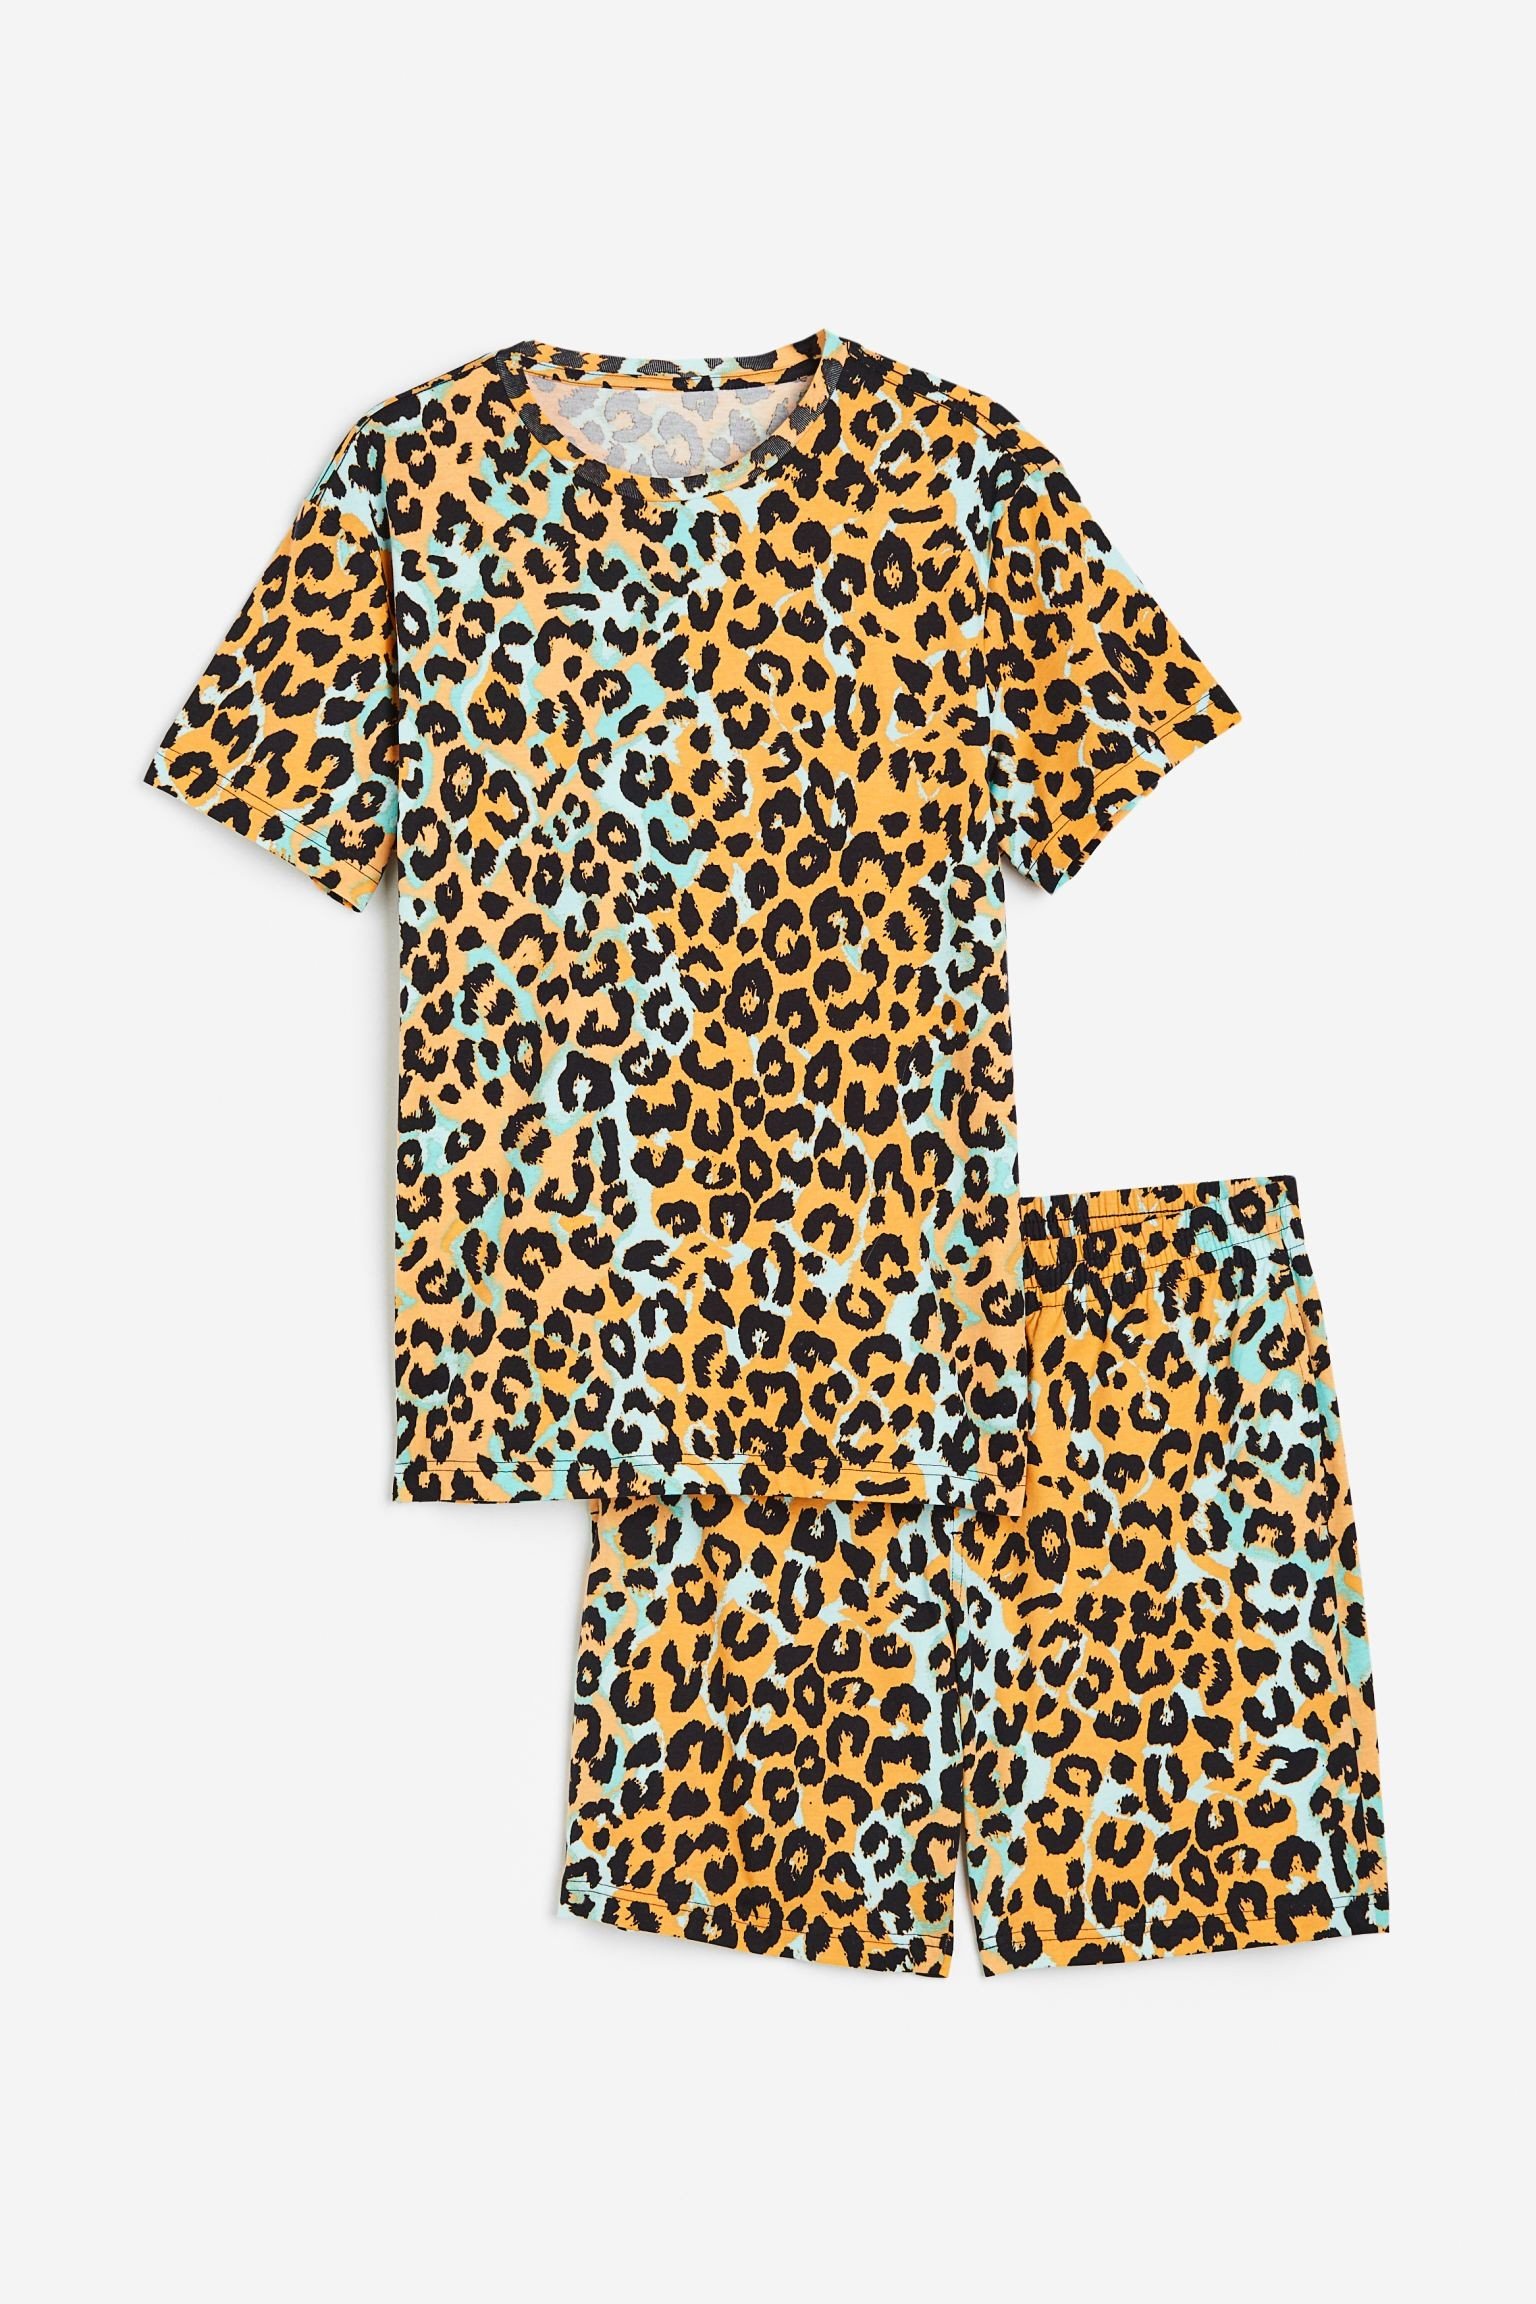 Піжама з футболкою та шортами звичайного покрою, Бежевий/леопардовий принт, Різні розміри